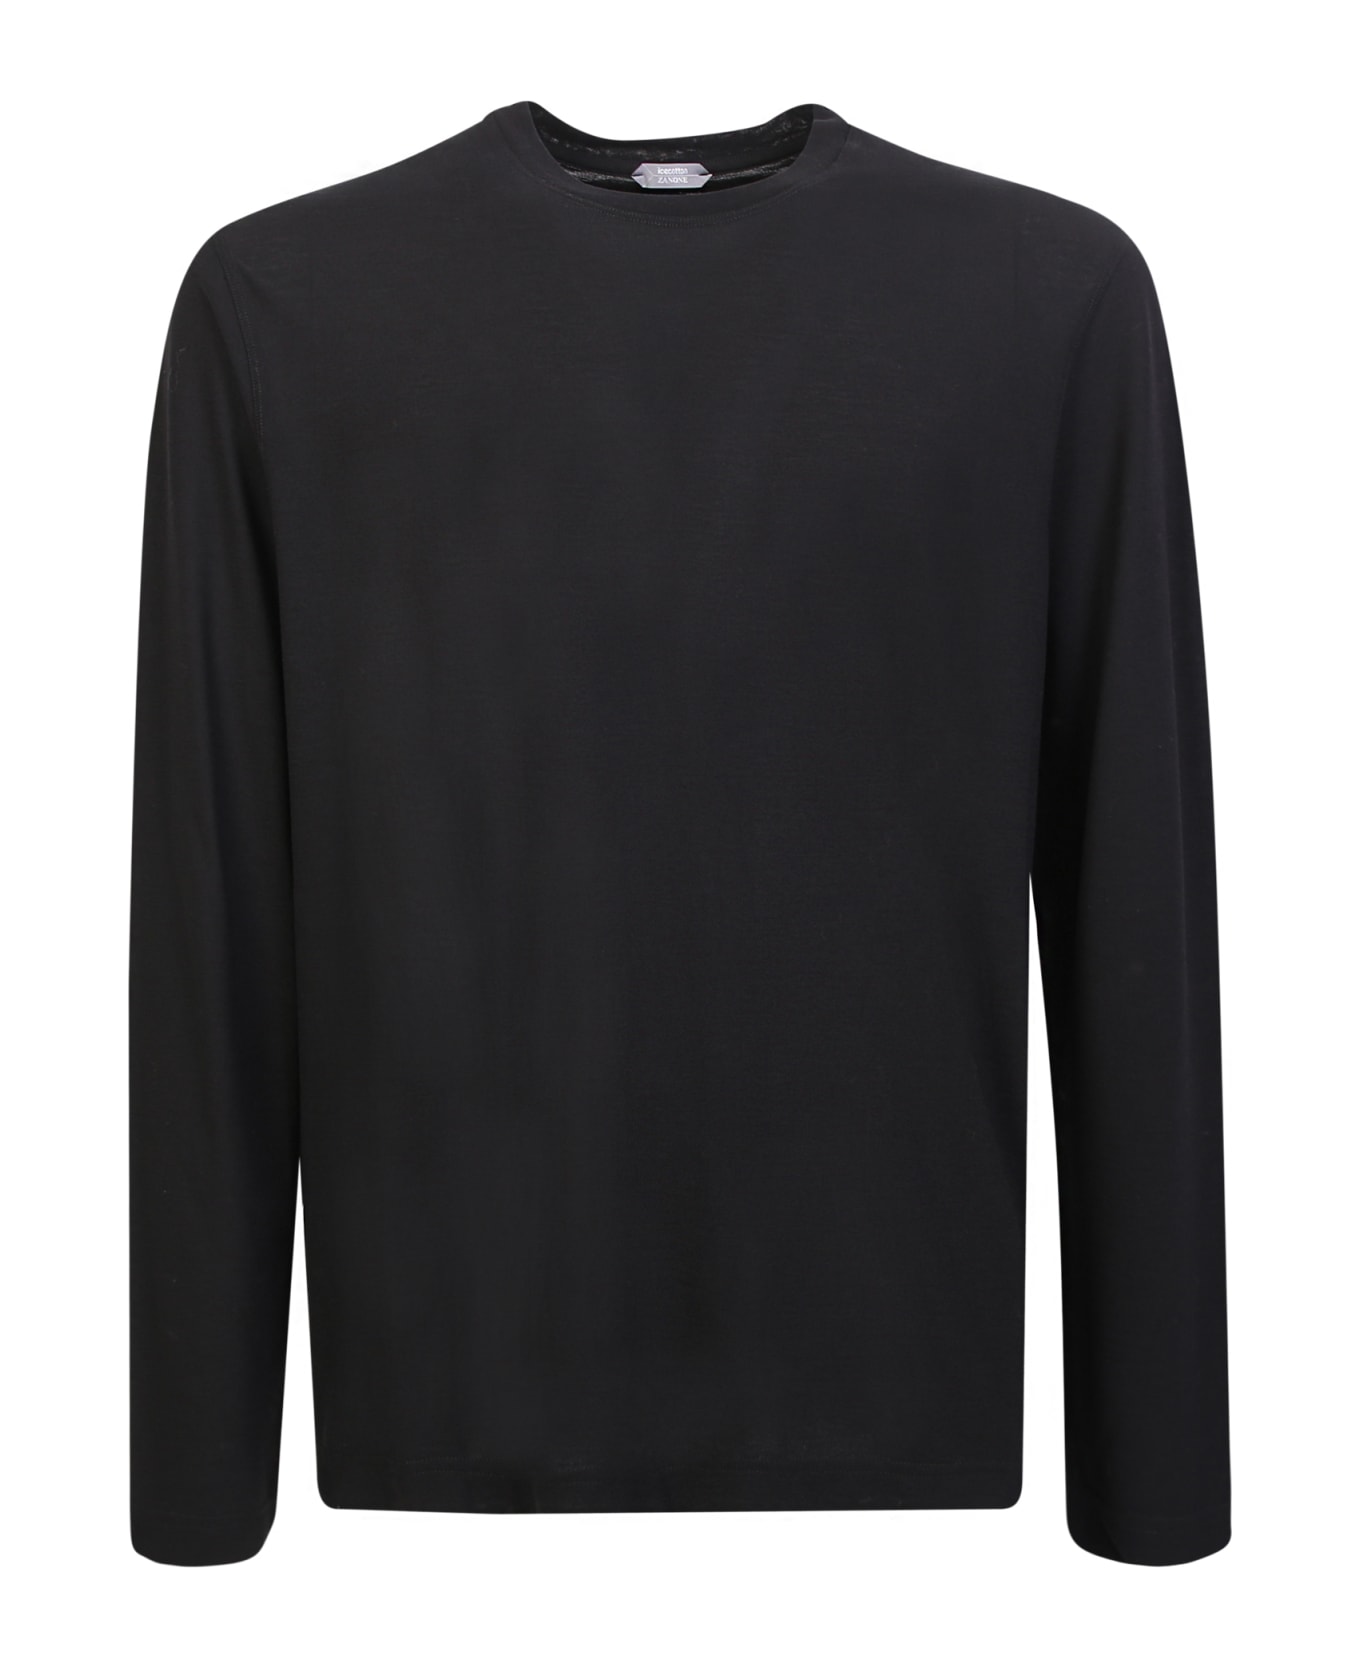 Zanone Solid Color T-shirt Black - Black